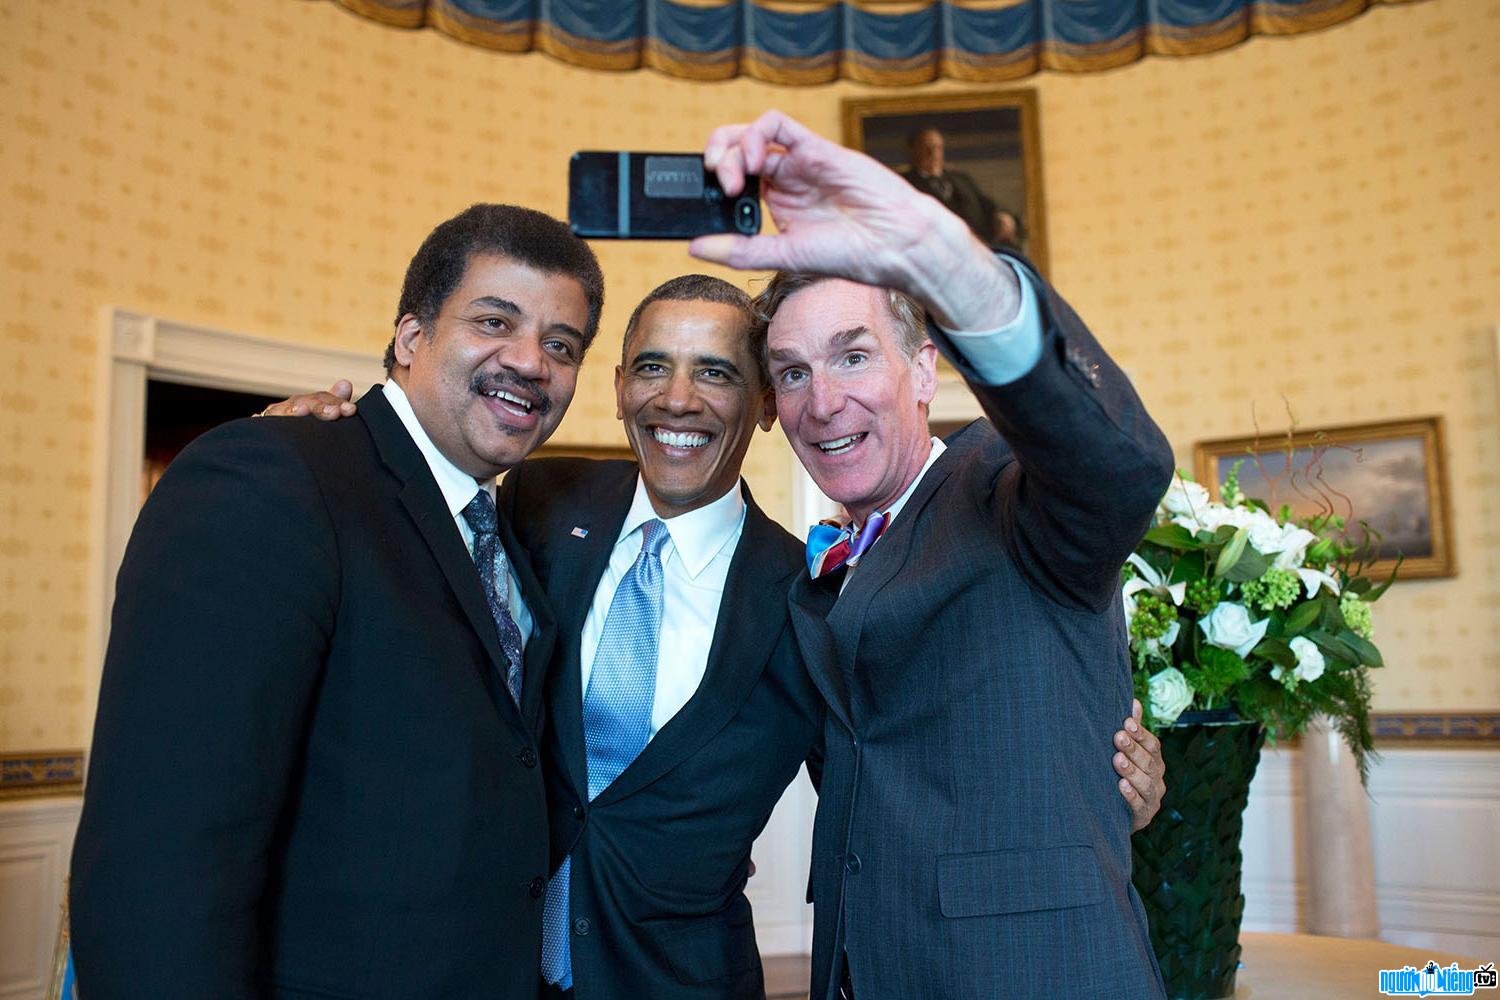 Neil deGrasse Tyson photo taken with President Obama at the White House